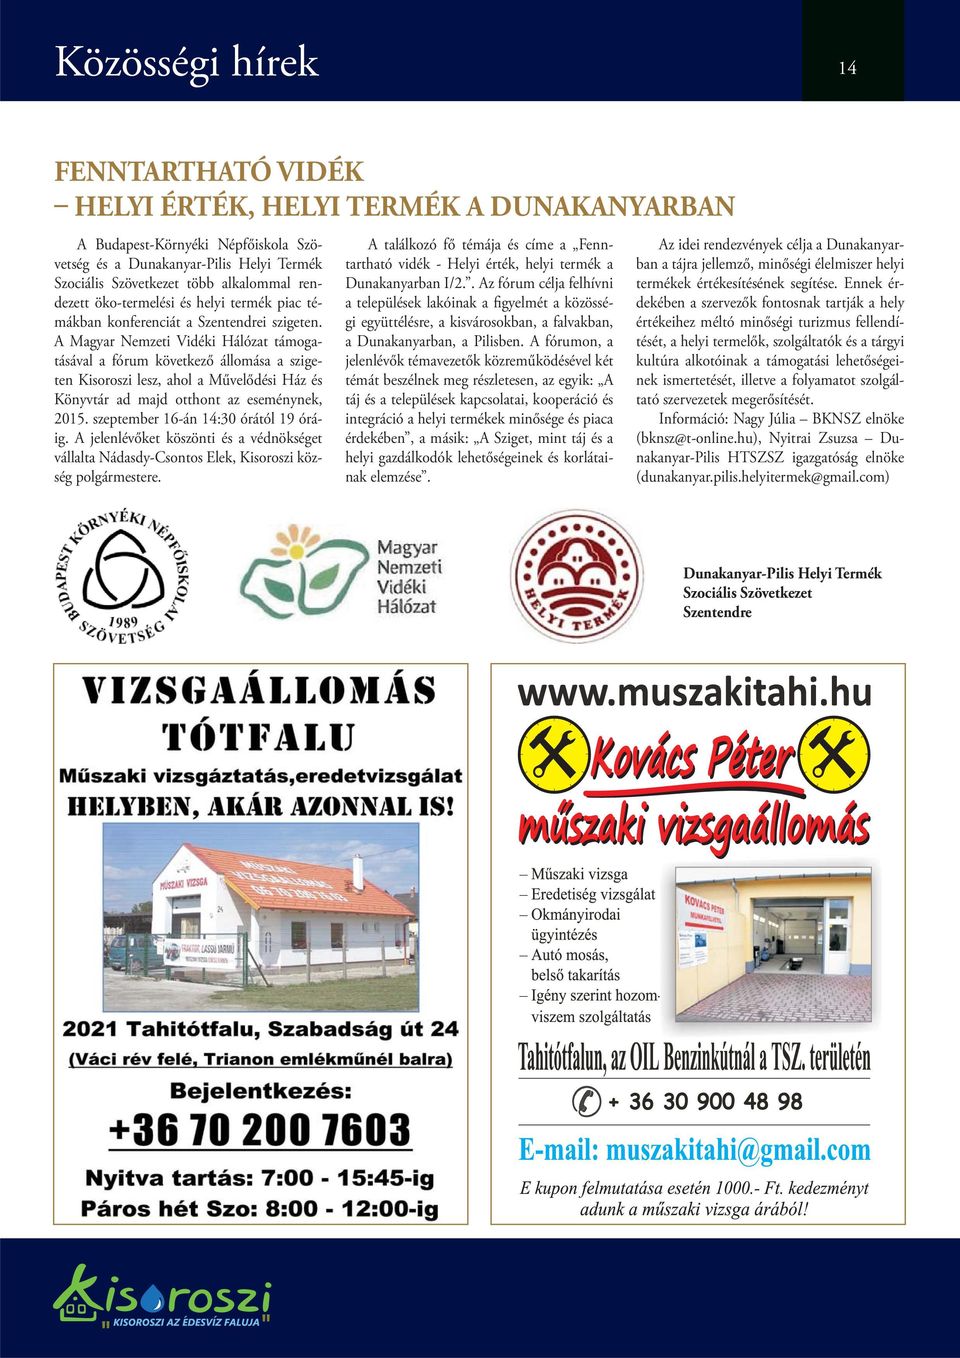 A Magyar Nemzeti Vidéki Hálózat támogatásával a fórum következő állomása a szigeten Kisoroszi lesz, ahol a Művelődési Ház és Könyvtár ad majd otthont az eseménynek, 2015.